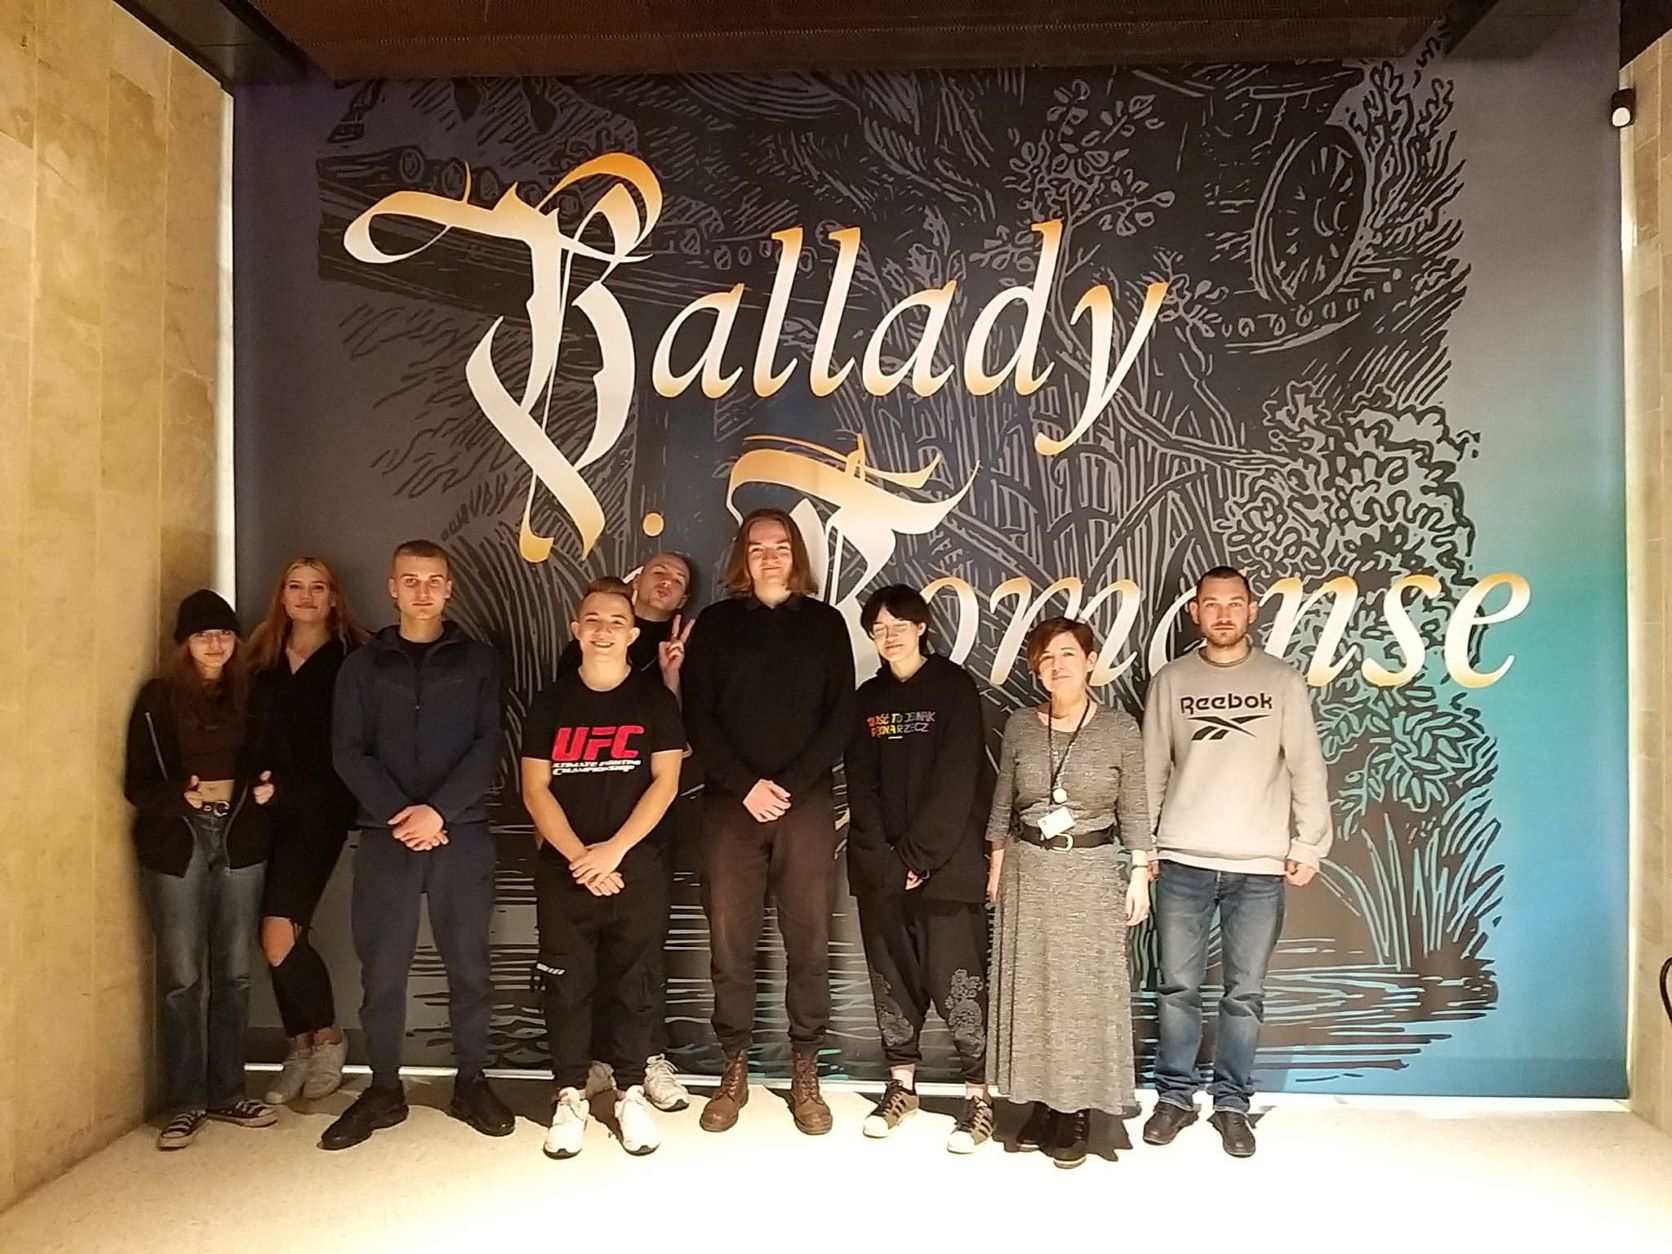 Grupa uczniów stoi na tle muralu z napisem Ballady i romanse